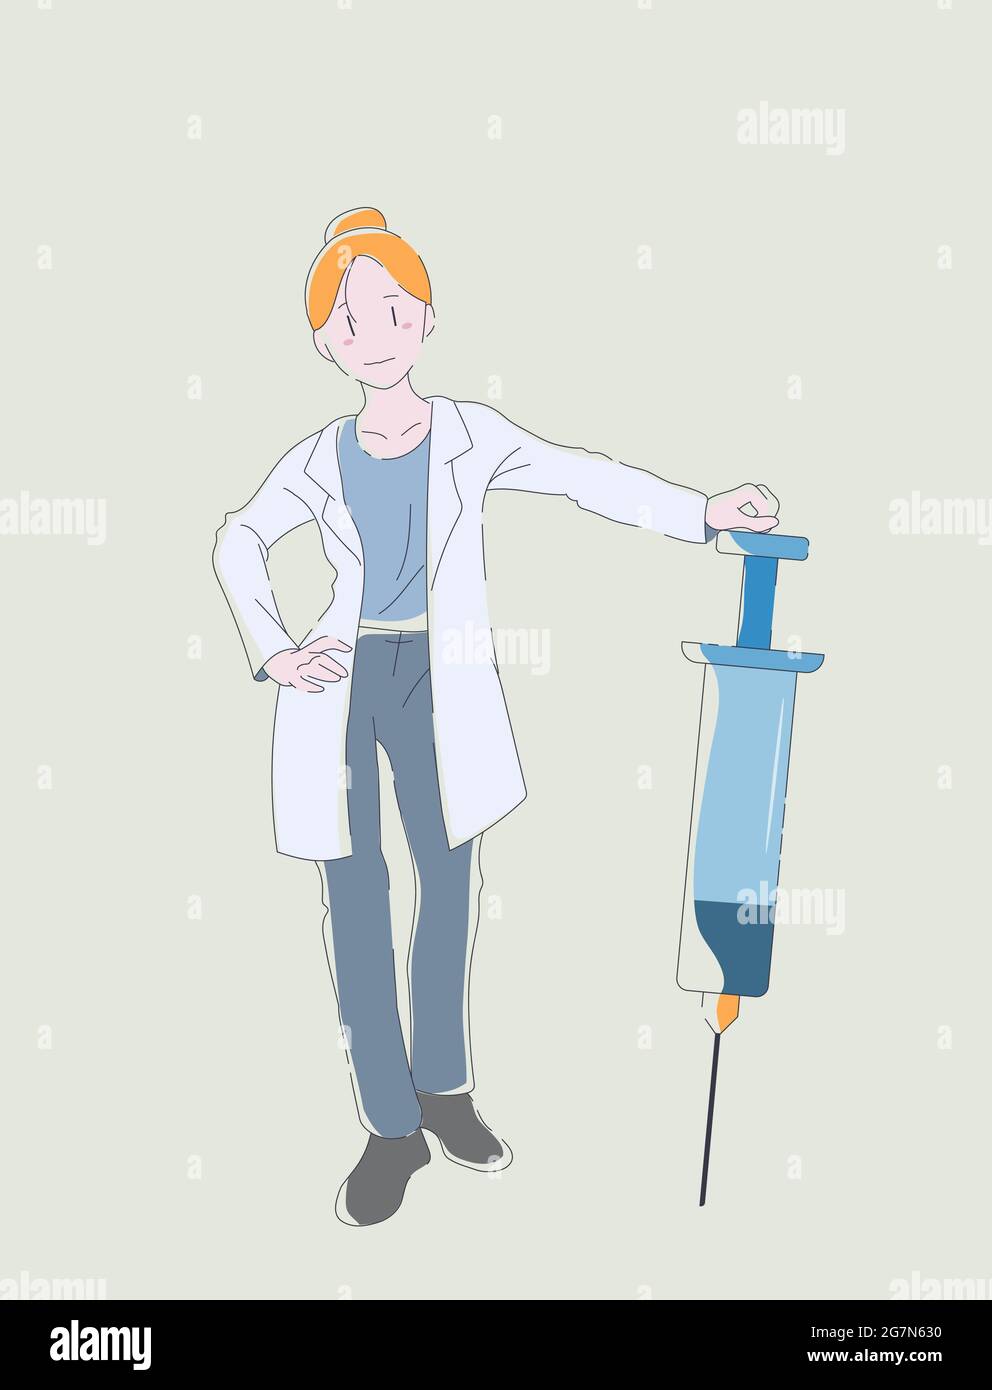 Le médecin tient une seringue. Médecin donnant la vaccination. Illustration vectorielle Doodle. Concept de vaccination. Dessin à la main d'une fille de style dessin animé. Illustration de Vecteur